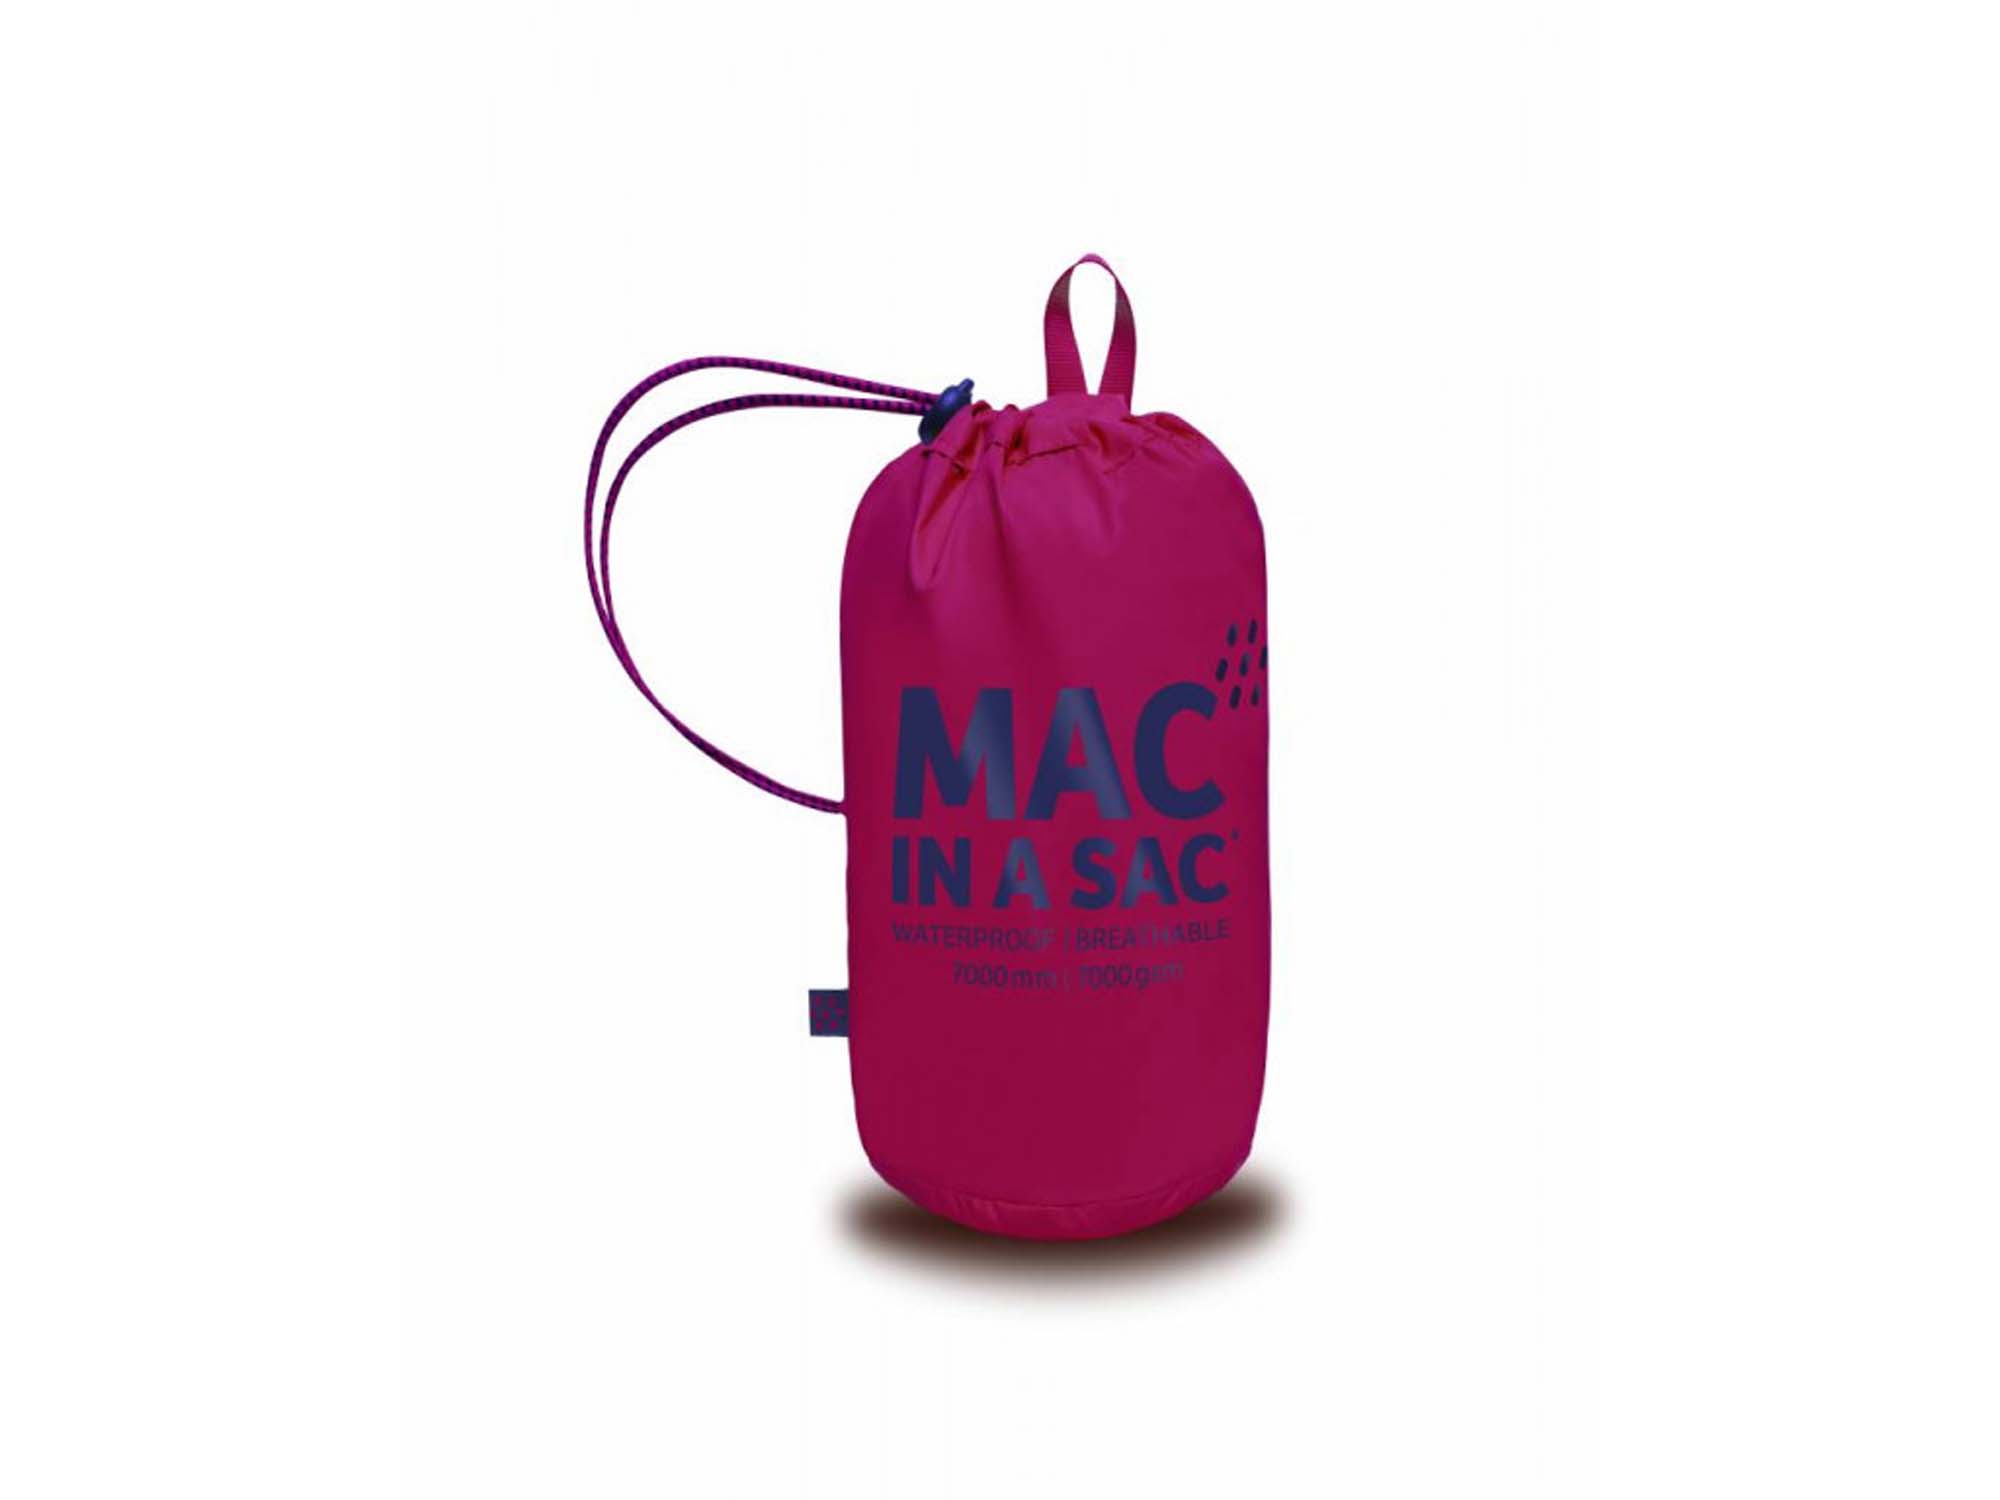 MAC IN A SAC Classic Heren